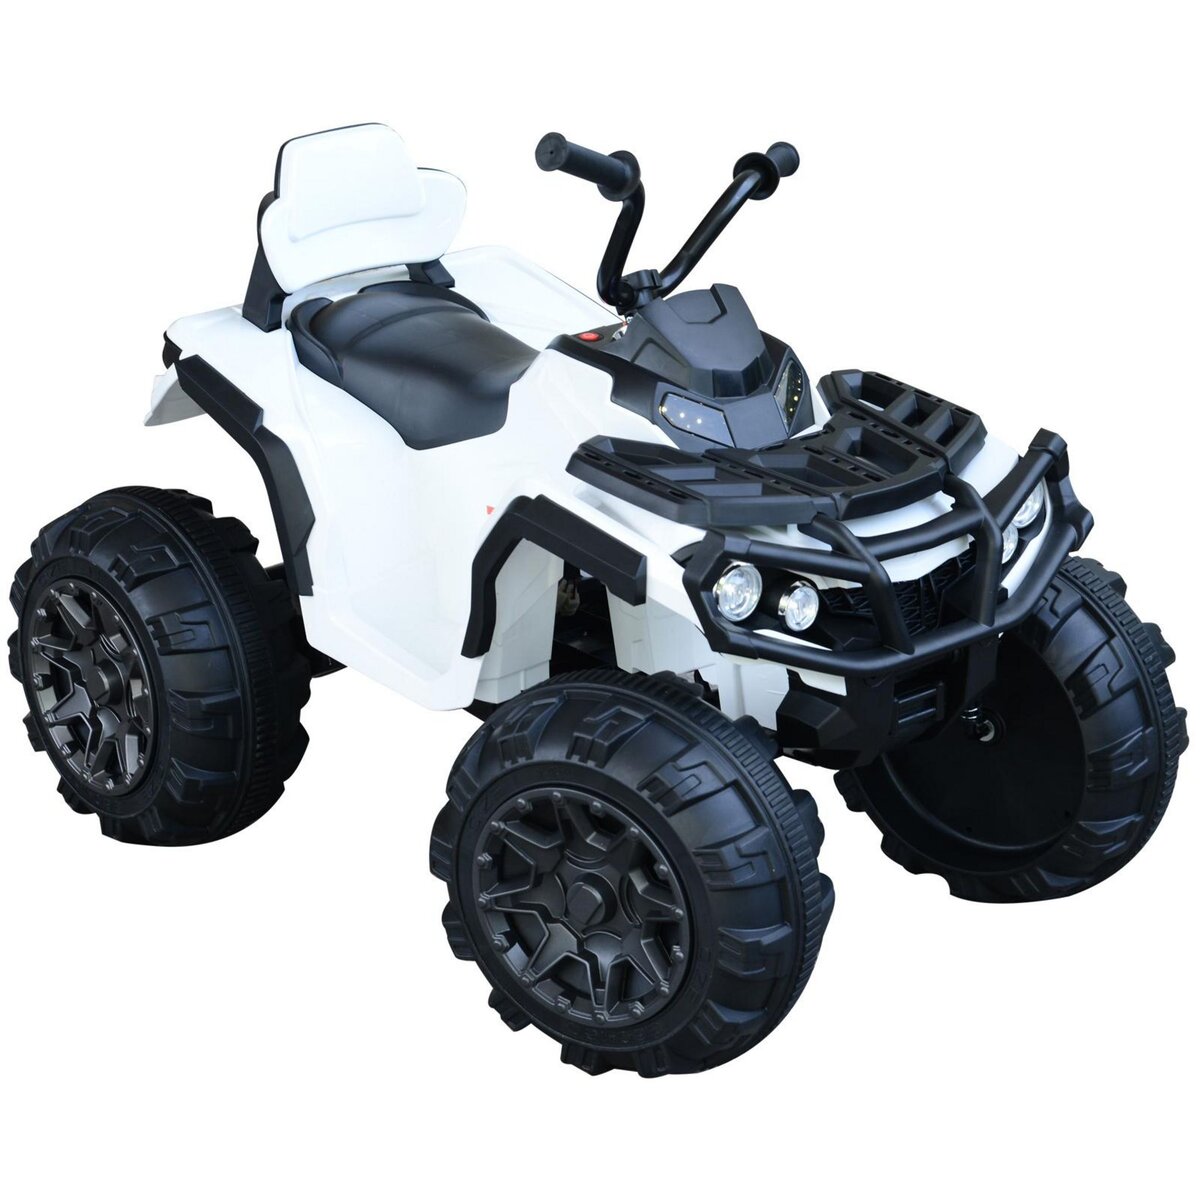 HOMCOM Voiture 4x4 quad buggy électrique enfant 3 à 6 ans effets lumineux musique V. max. 3 Km/h batterie rechargeable lecteur MP3 multifonction blanc